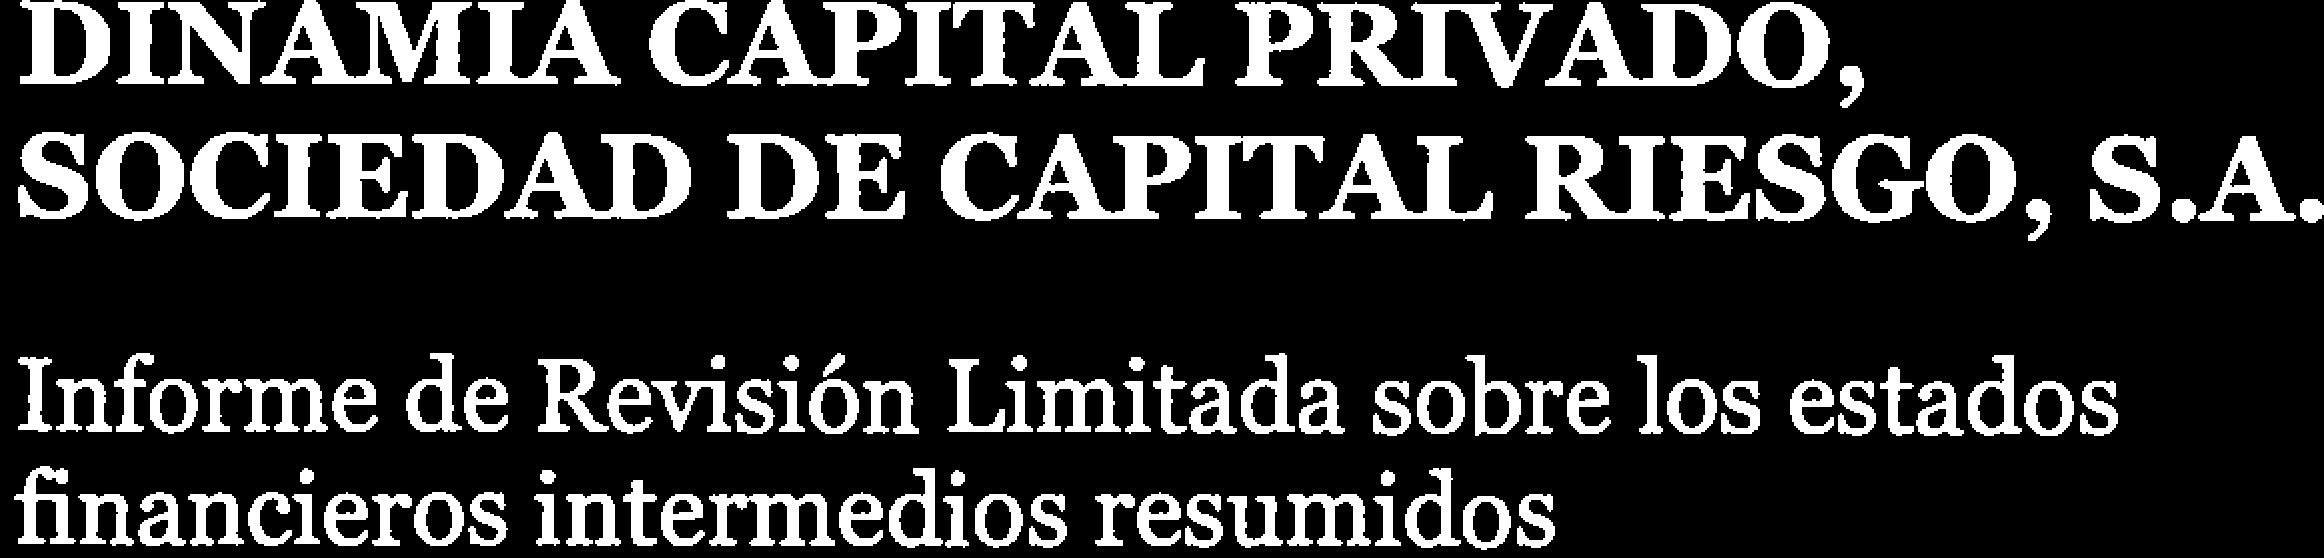 DINAMIA CAPITAL PRIVADO, SOCIEDAD DE CAPITAL RIESGO, S.A. Informe de